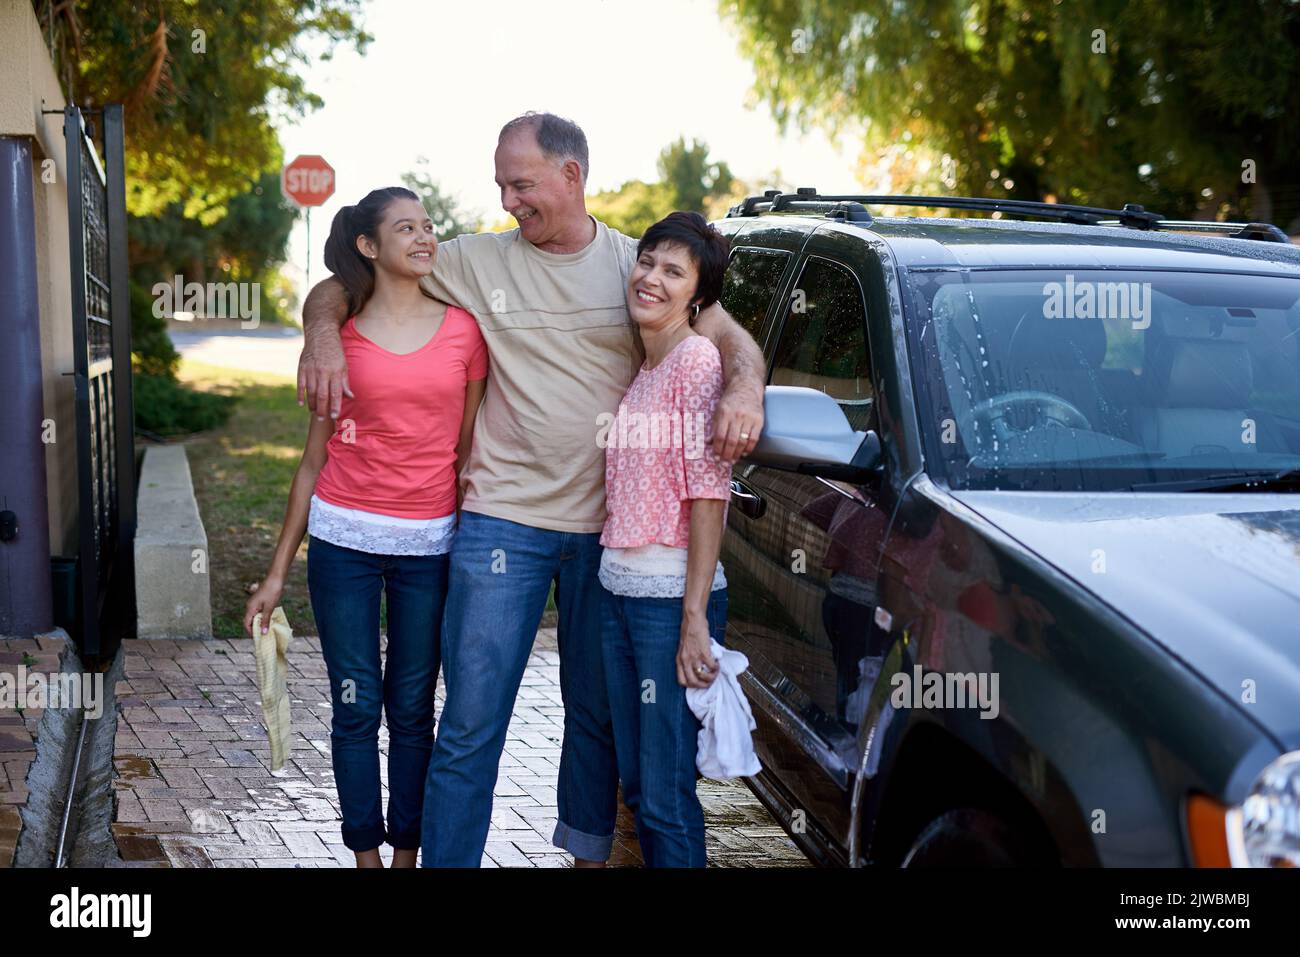 Sie arbeiten gerne als Team. Eine Familie, die draußen ein Auto gemeinsam wäscht. Stockfoto